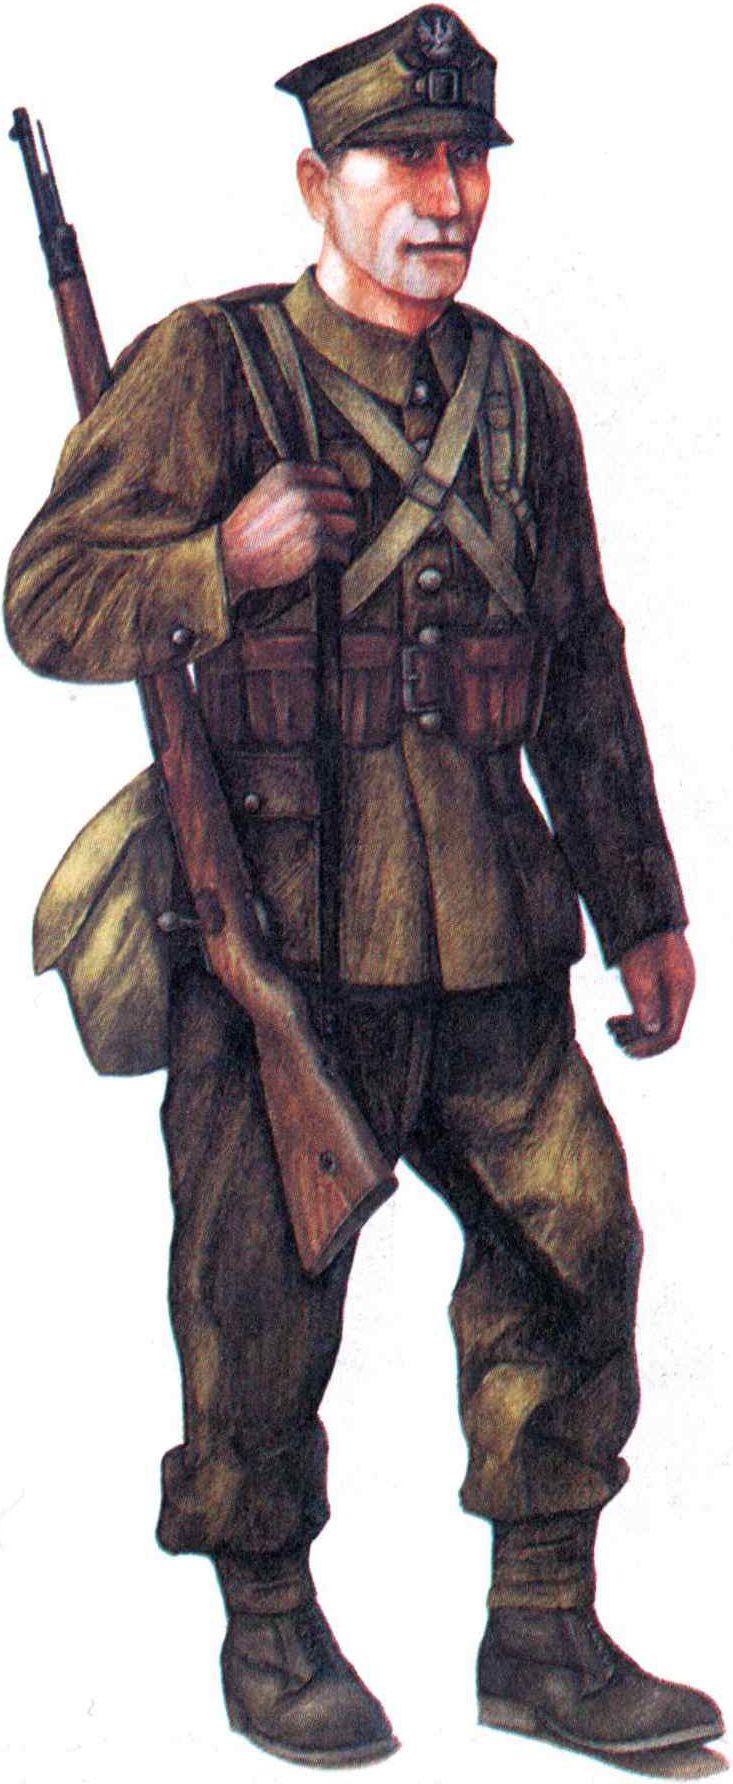 Рядовой пехоты в полевой форме (мундир обр. 1936 г., длинные брюки обр. 1937 г.) в полном боевом снаряжении с 7,92-мм винтовкой «Mauser» обр. 1898 г